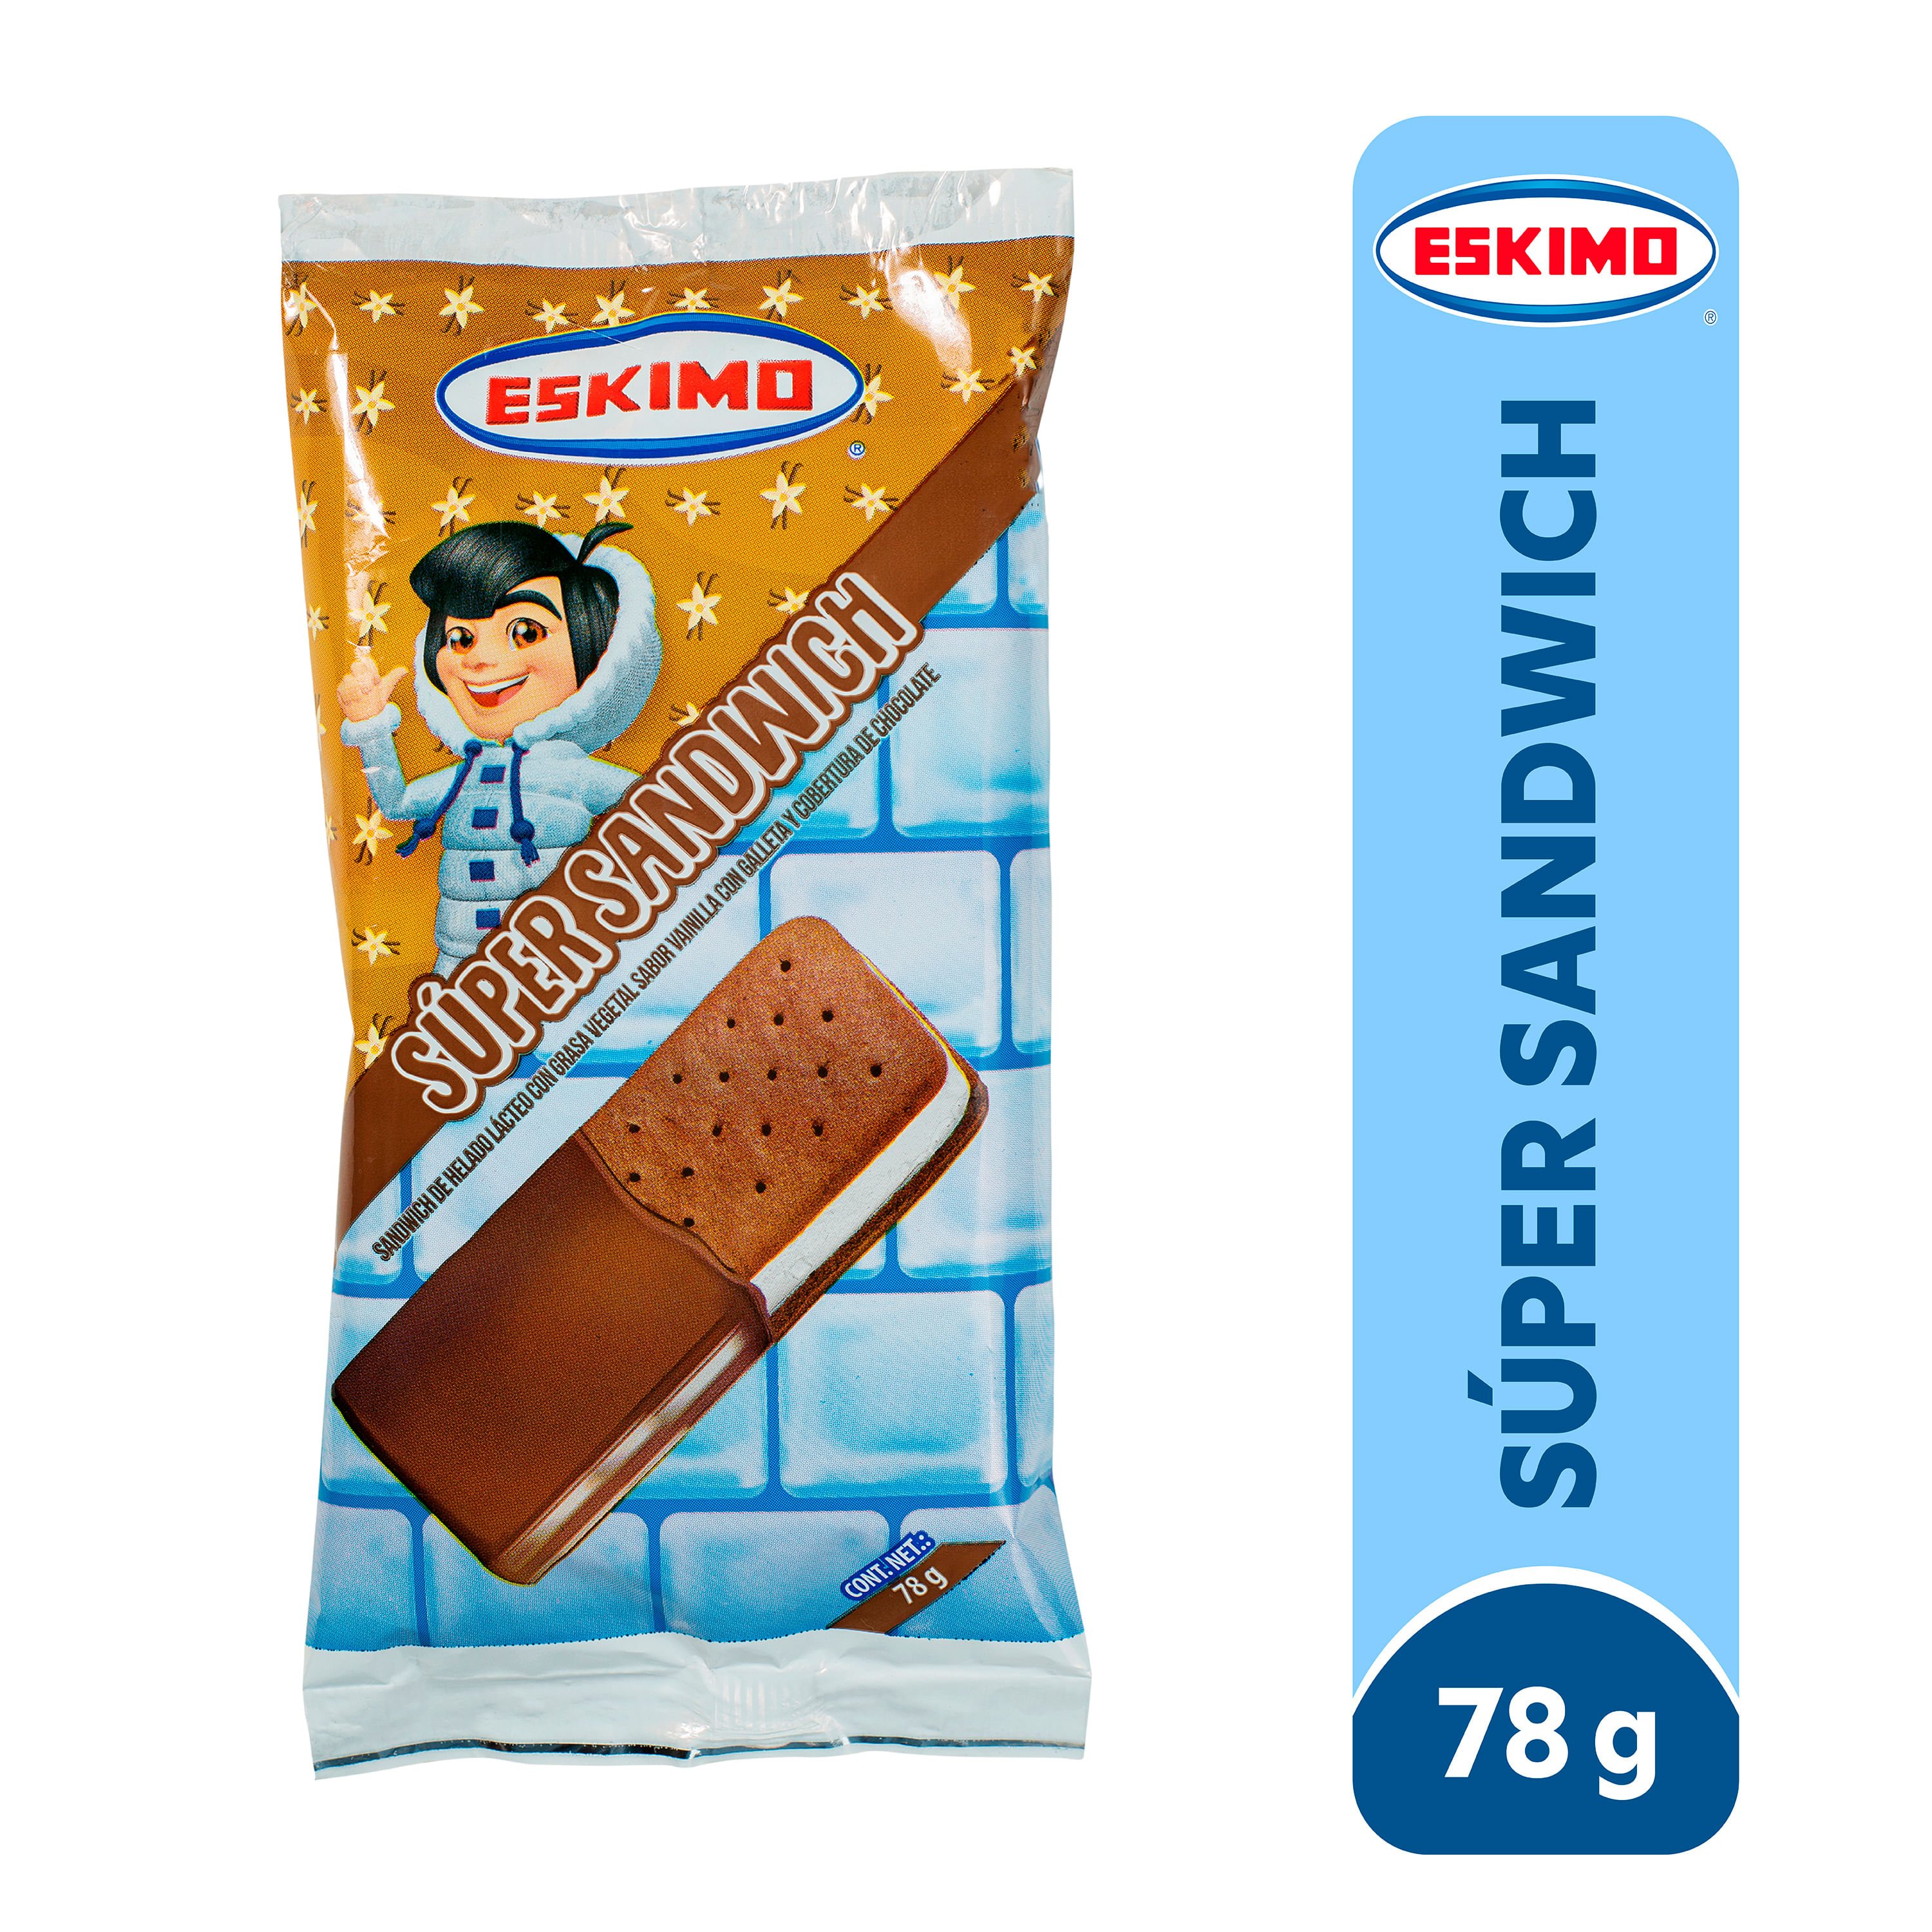 Super-Sandwich-marca-Eskimo-Vainilla-78g-1-10980